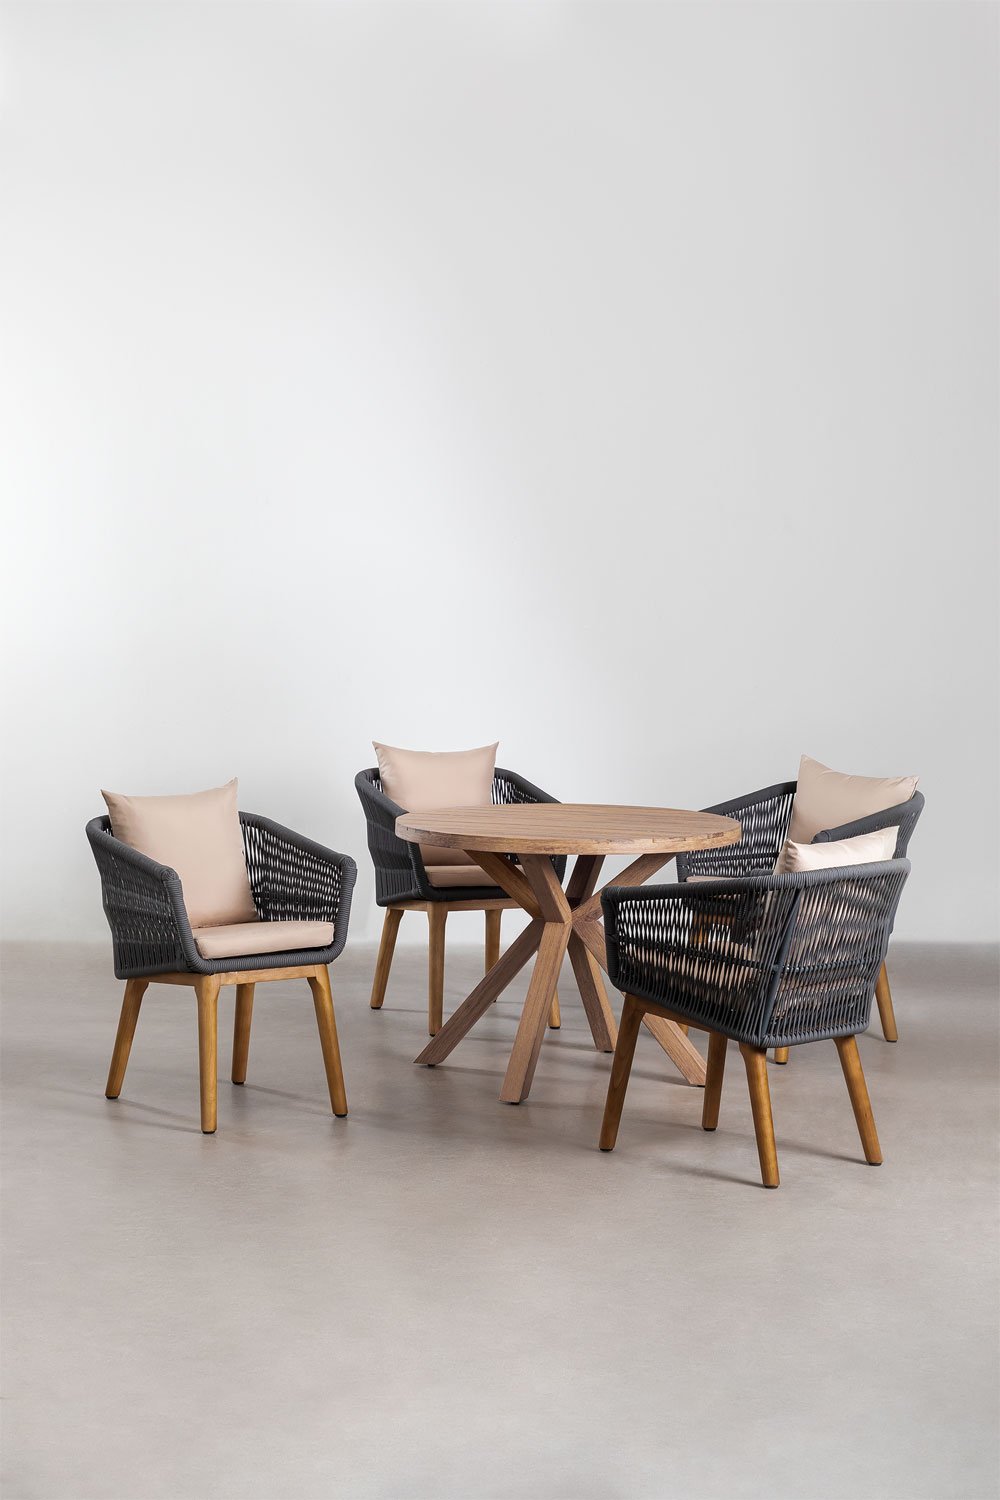 Okrągły drewniany stół (Ø100 cm) Naele i 4 krzesła ogrodowe Barker, obrazek w galerii 1